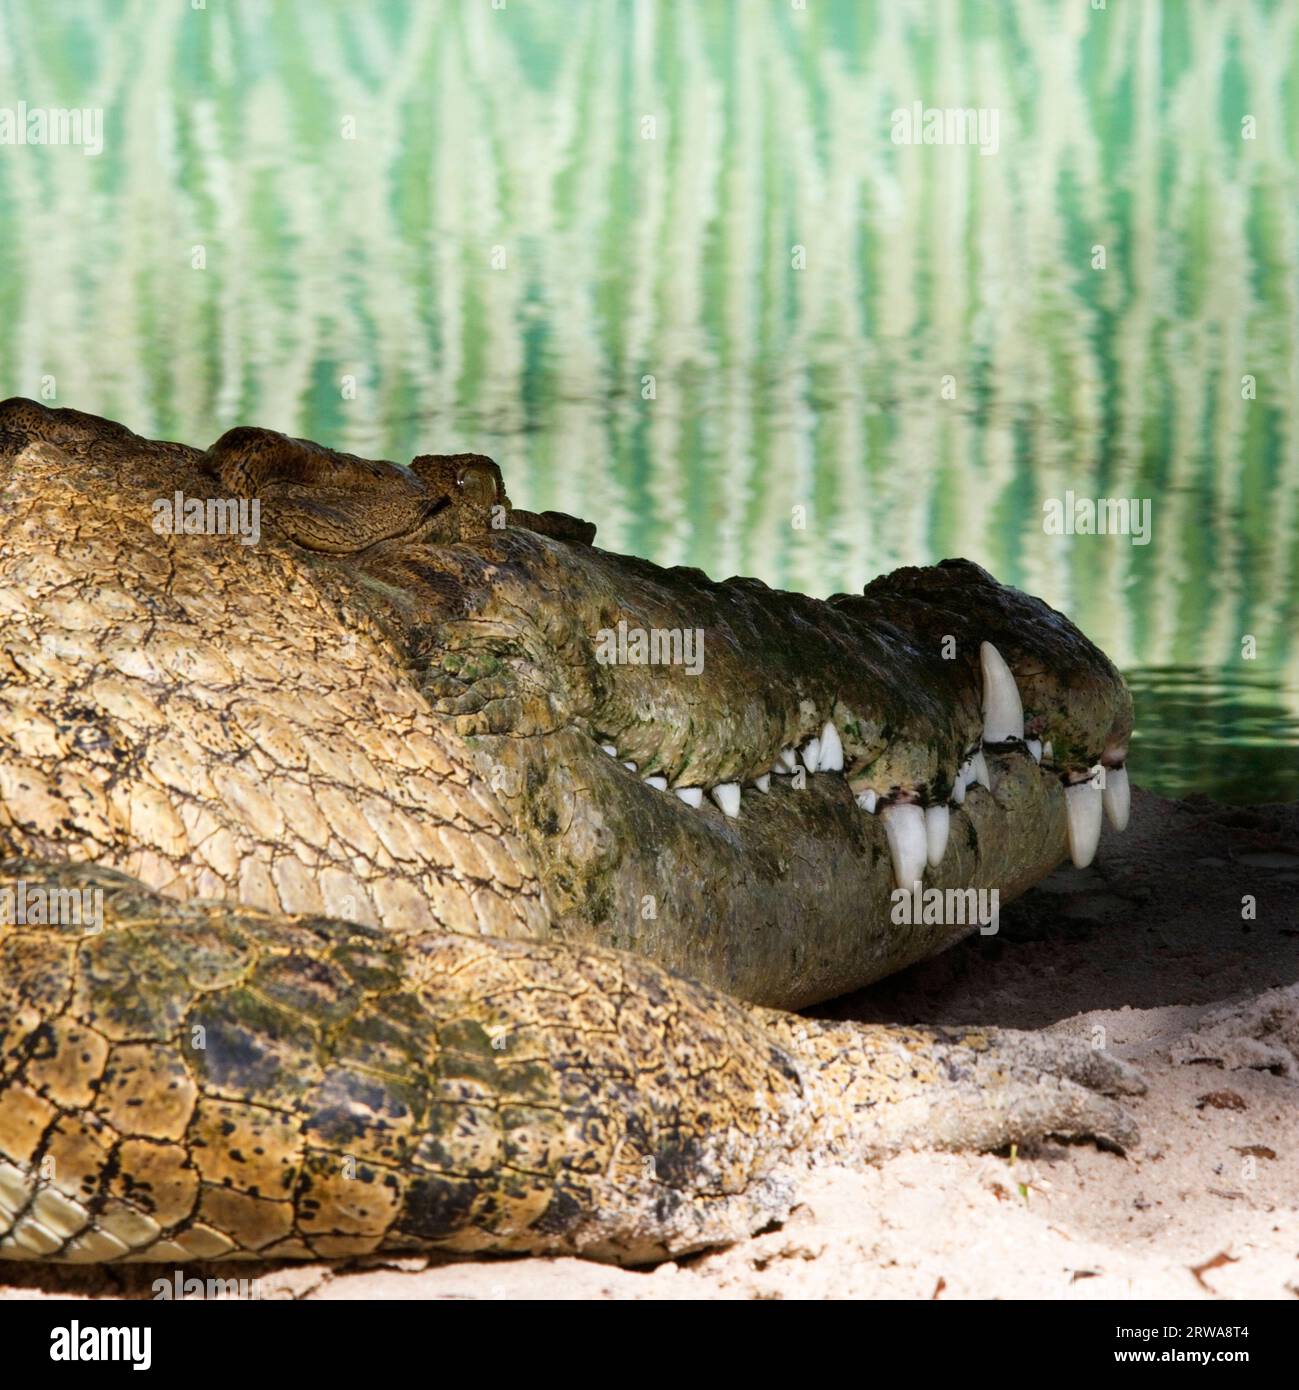 Ein Alligator, der am Boden eines Aquariums liegt. Stockfoto